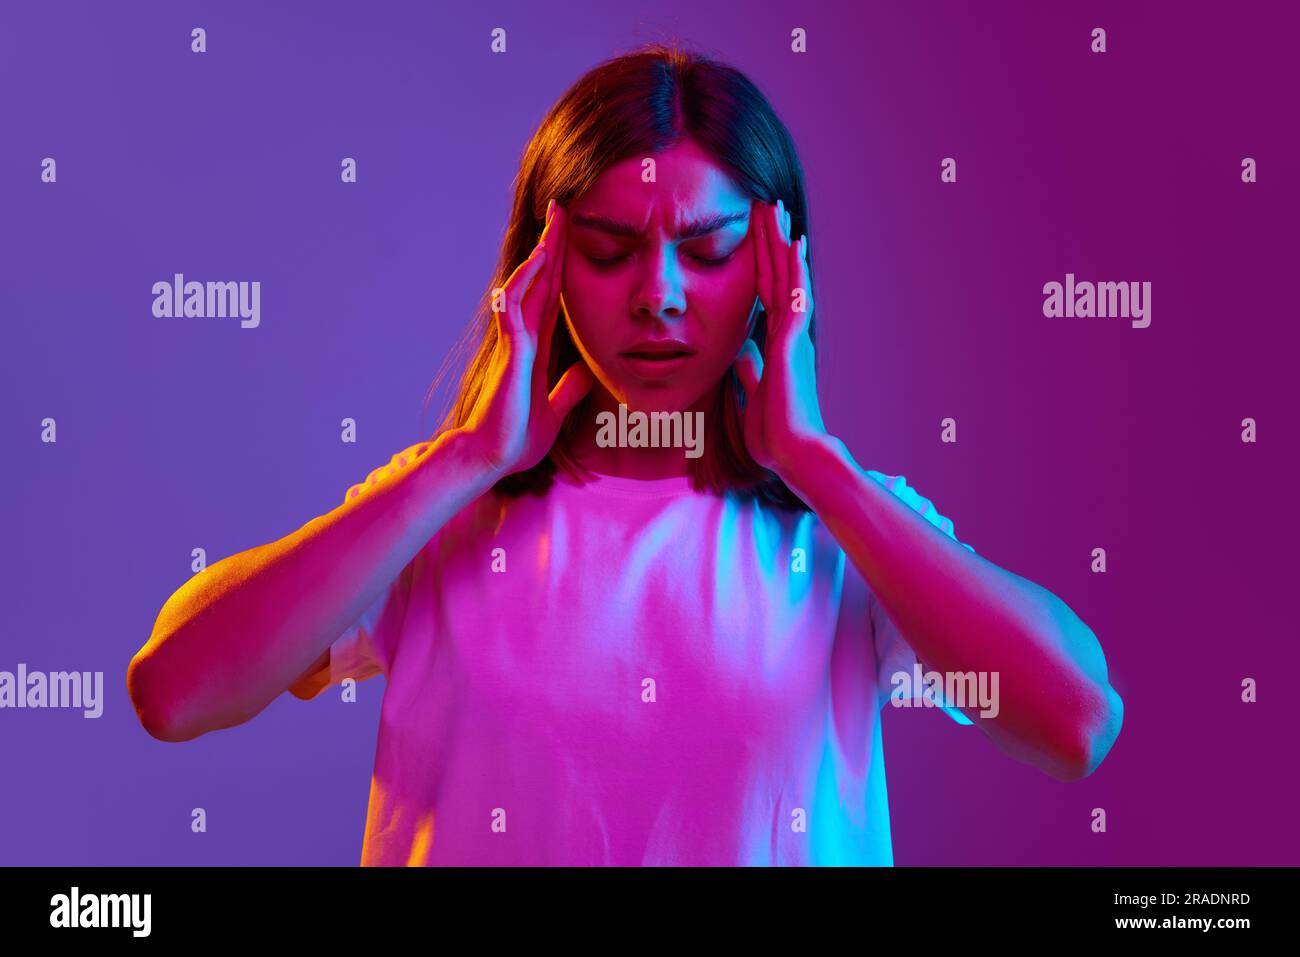 Ritratto di una giovane ragazza che tiene le mani sulla testa, ha mal di testa, viso premuroso su sfondo viola sfumato con luce al neon Foto Stock